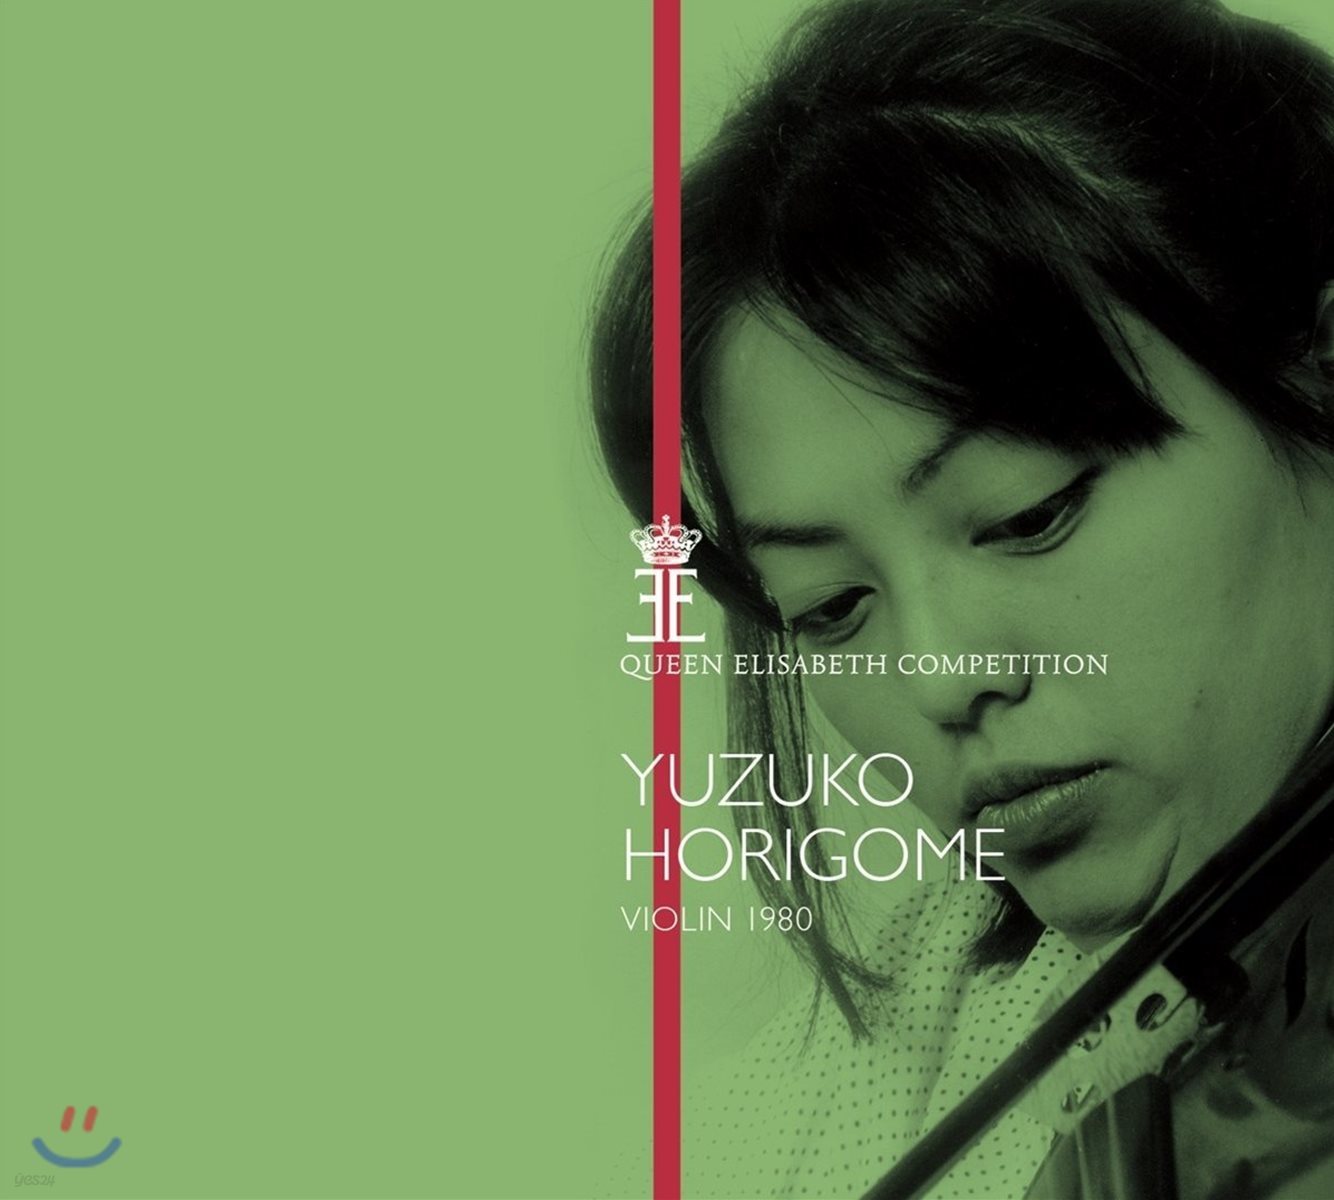 Yuzuko Horigome 유즈코 호리고메 - 퀸 엘리자베스 콩쿠르 1980년 실황 (Queen Elisabeth Competition - Violin 1980)